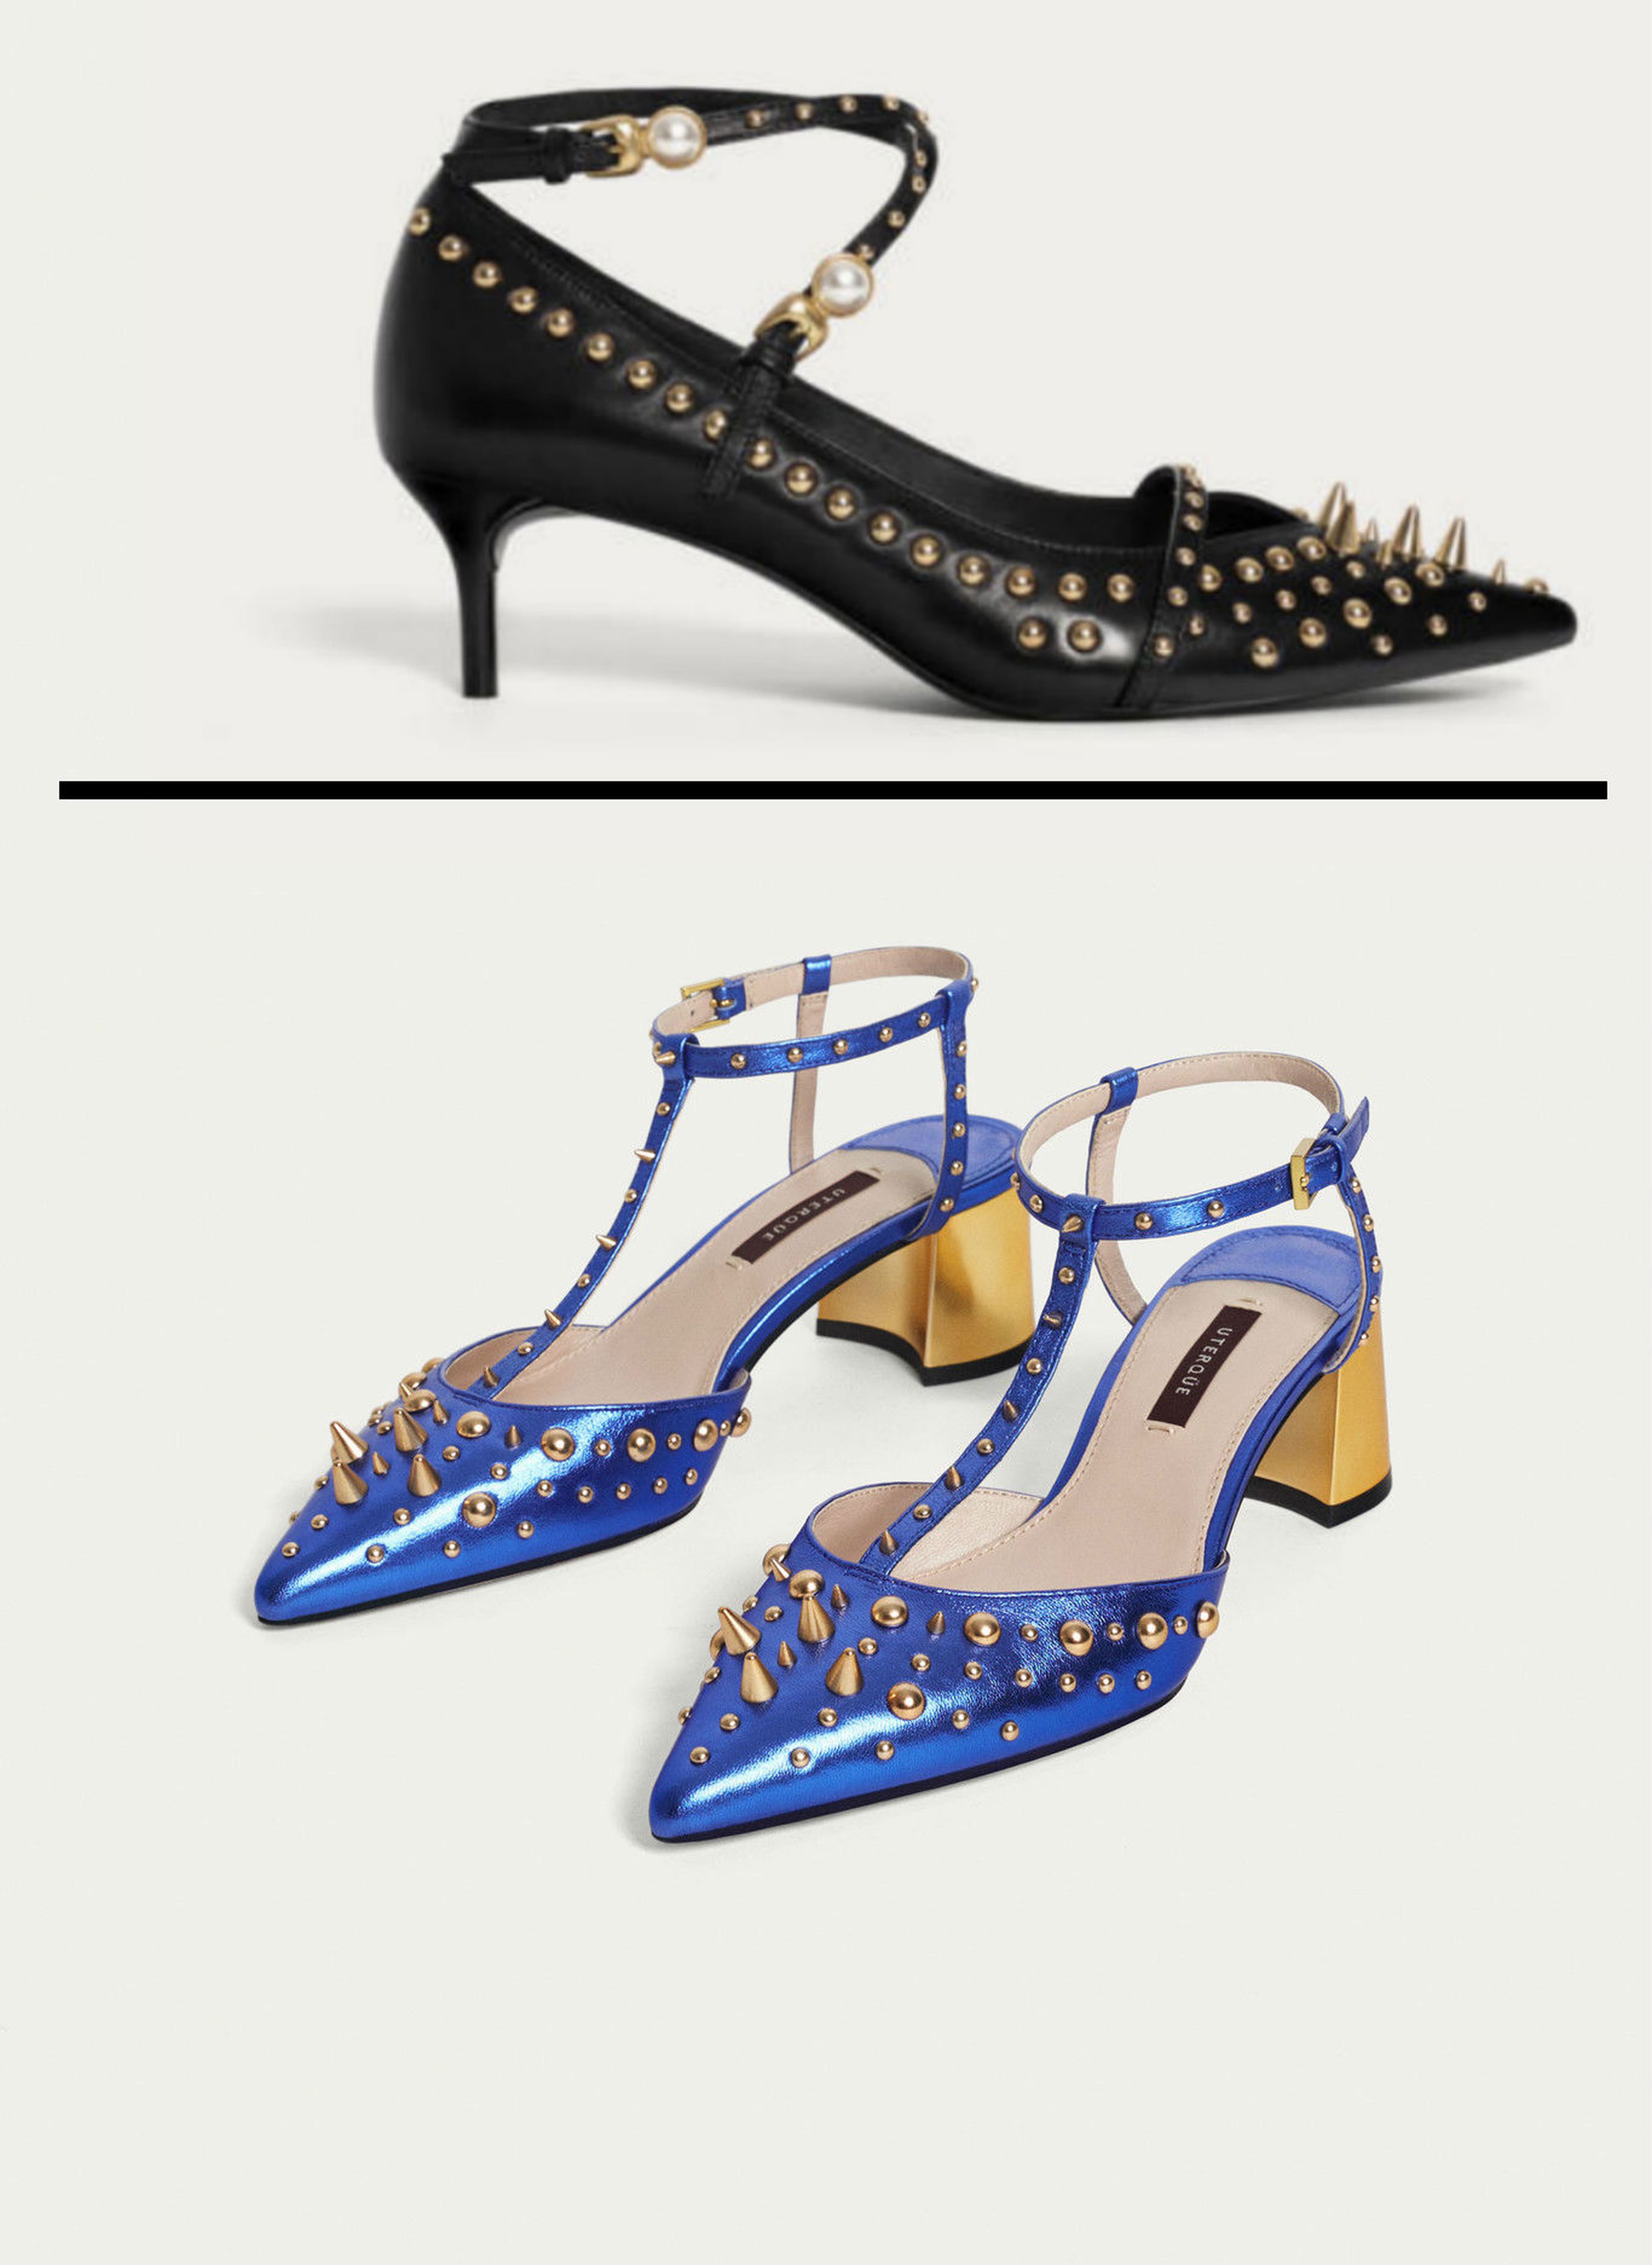 Modelo de Uterque de los zapatos de pinchos de Letizia, en azul y negro.